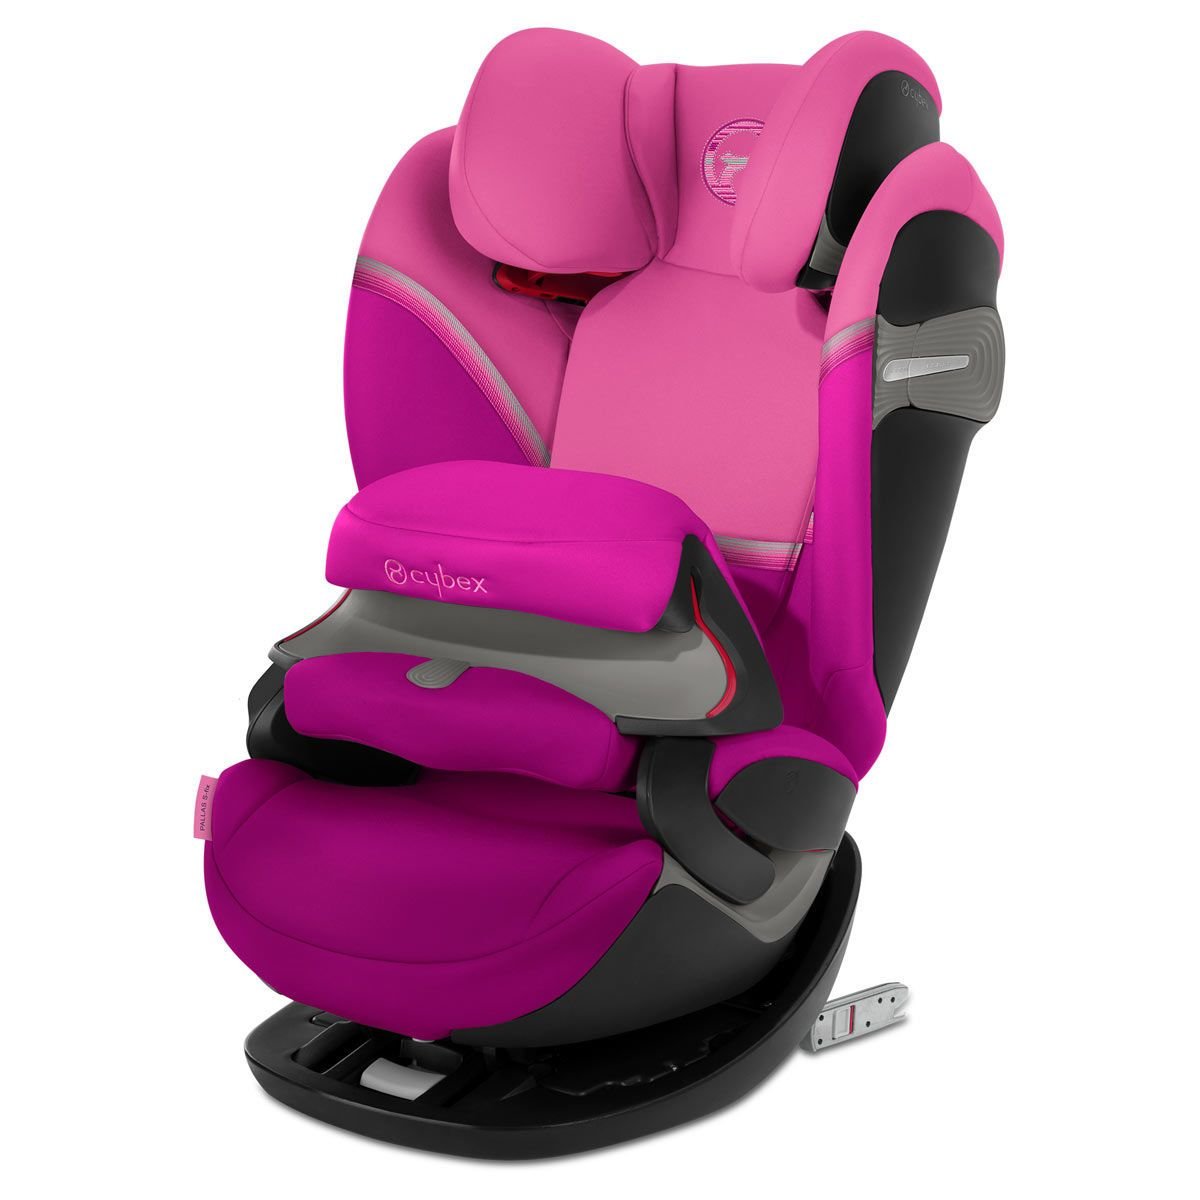 CYBEX Pallas S-Fix Kindersitz Magnolia Pink günstig kaufen